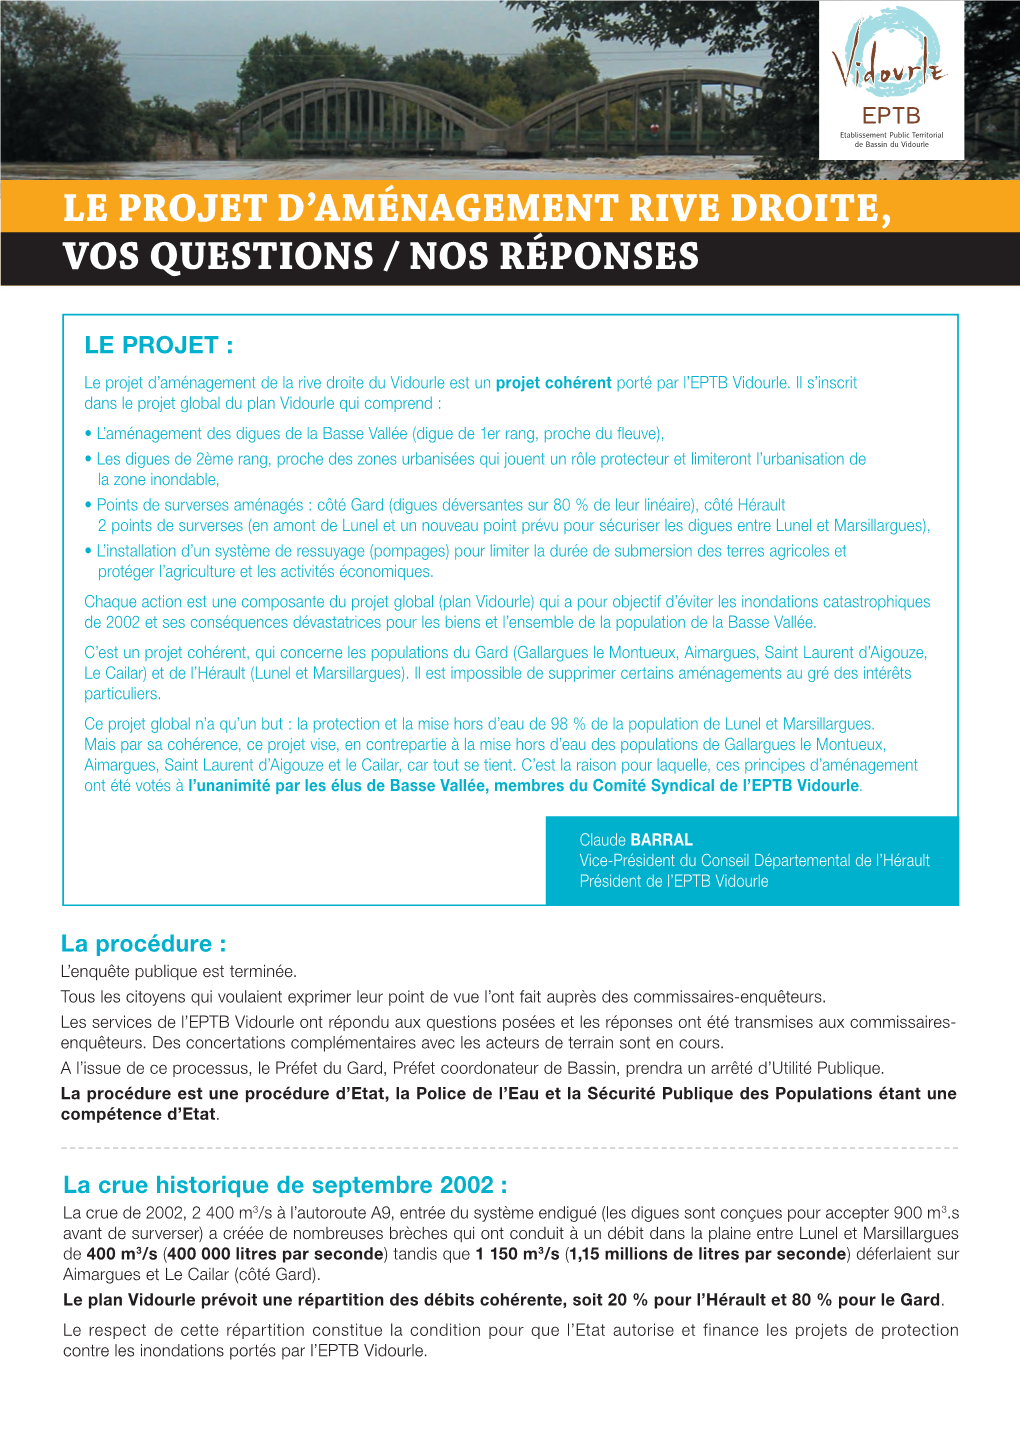 Le Projet D'aménagement Rive Droite, Vos Questions / Nos Réponses